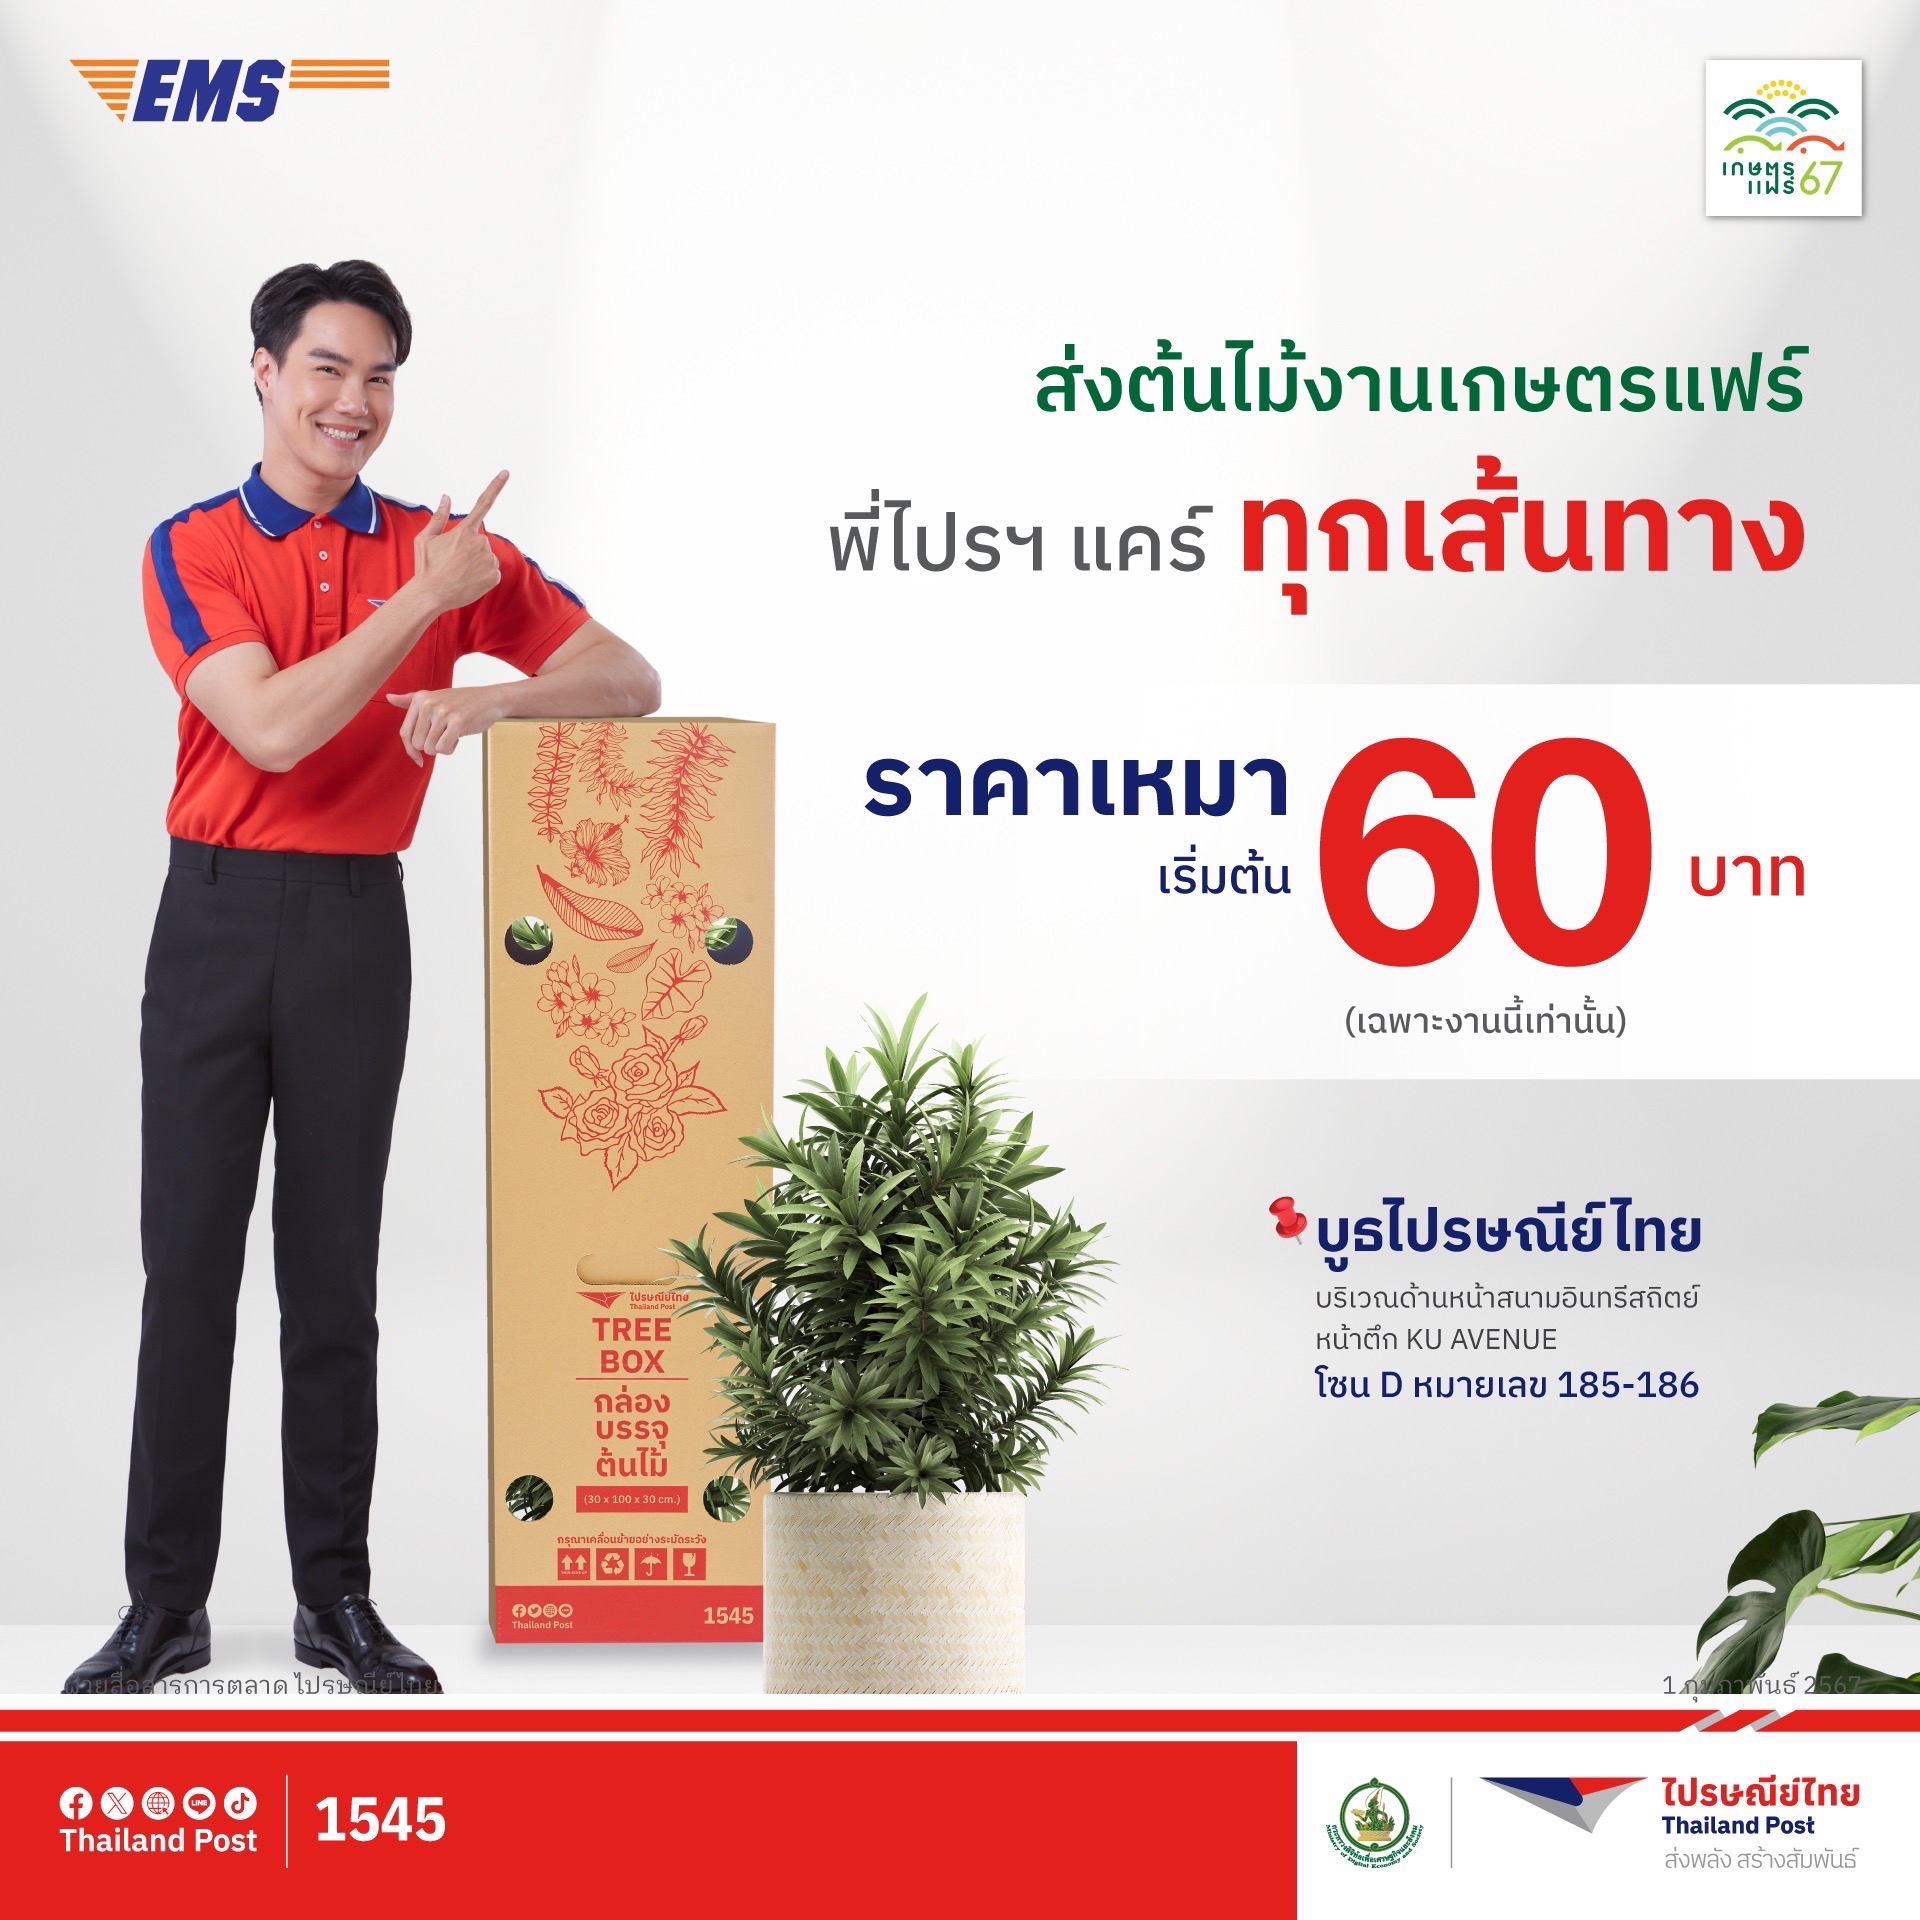 ไปรษณีย์ไทย ส่งโปรฯพิเศษ 'งานเกษตรแฟร์ 2567' ช้อปจุใจไม่ต้องหิ้วกลับ ส่งด่วนถึงบ้านด้วยบริการ EMS พบกัน ณ บูธไปรษณีย์โซน D185 – D186  